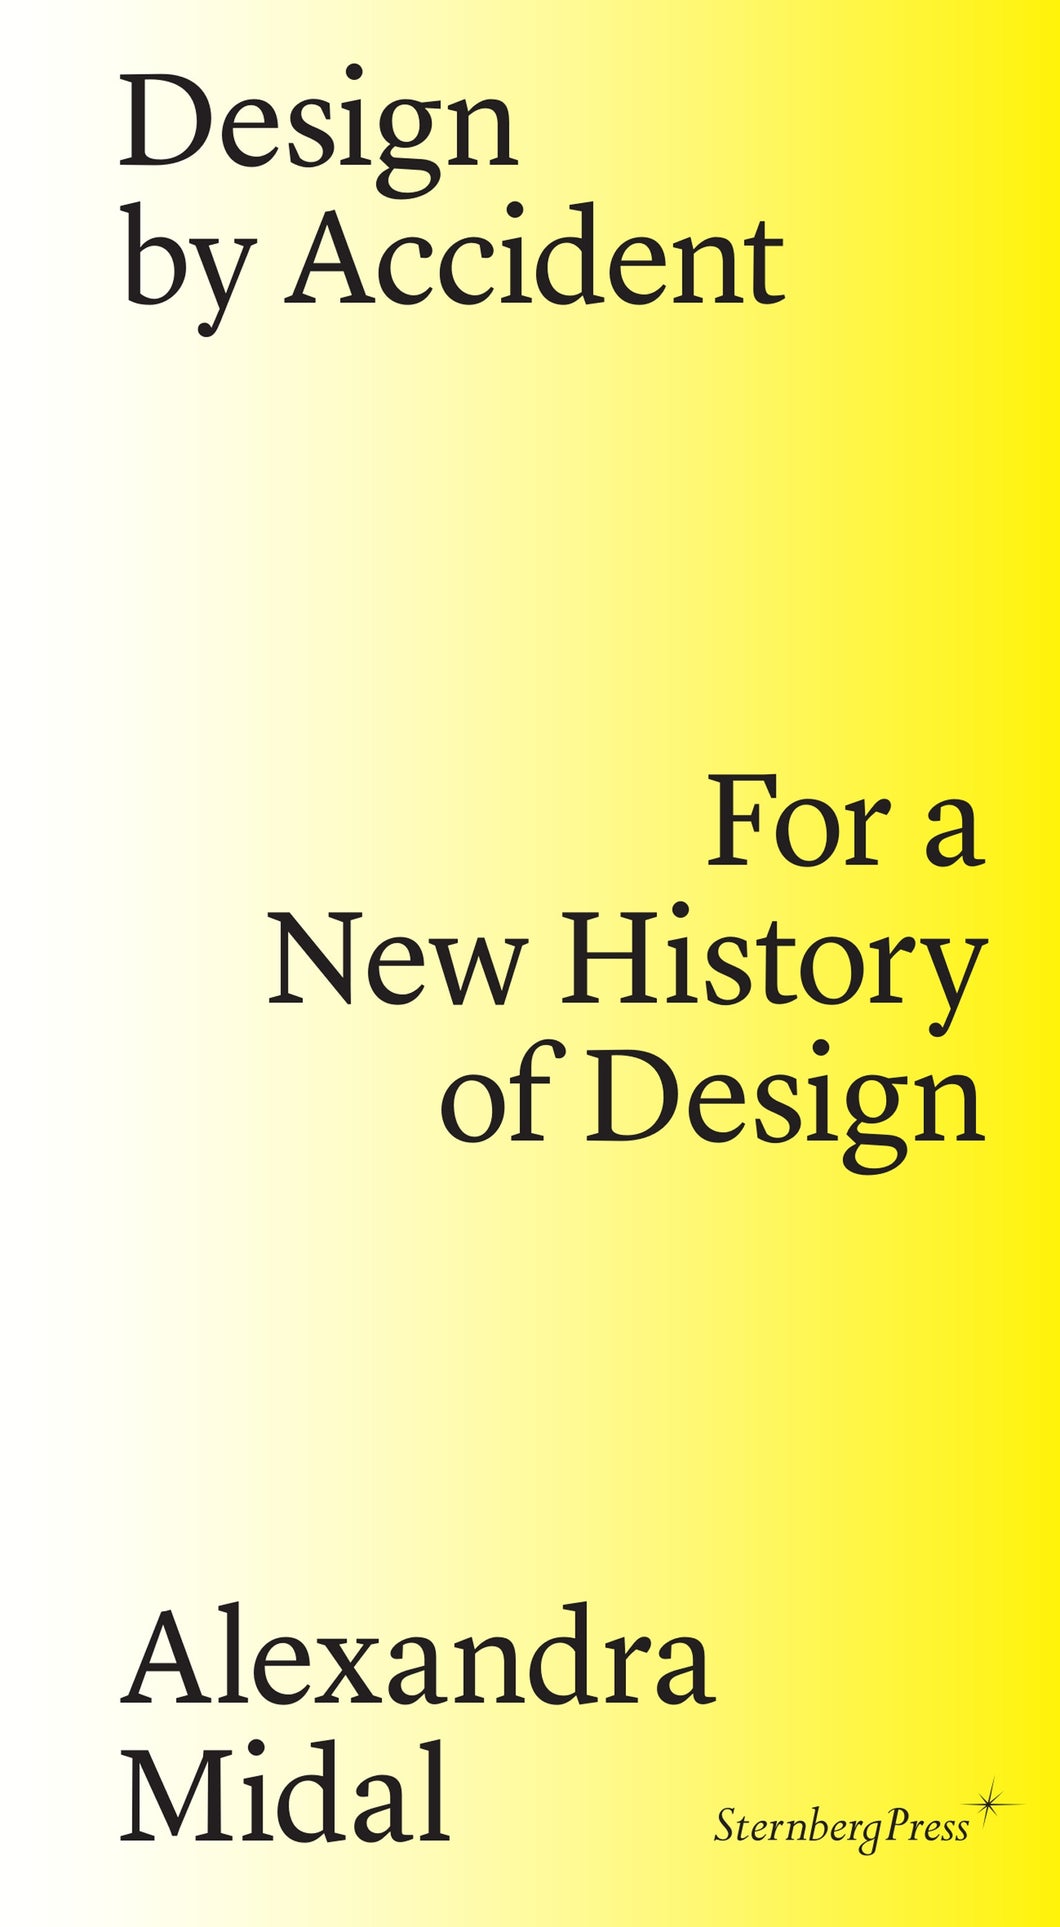 Design by Accident: For a New History of Design ร้านหนังสือและสิ่งของ เป็นร้านหนังสือภาษาอังกฤษหายาก และร้านกาแฟ หรือ บุ๊คคาเฟ่ ตั้งอยู่สุขุมวิท กรุงเทพ